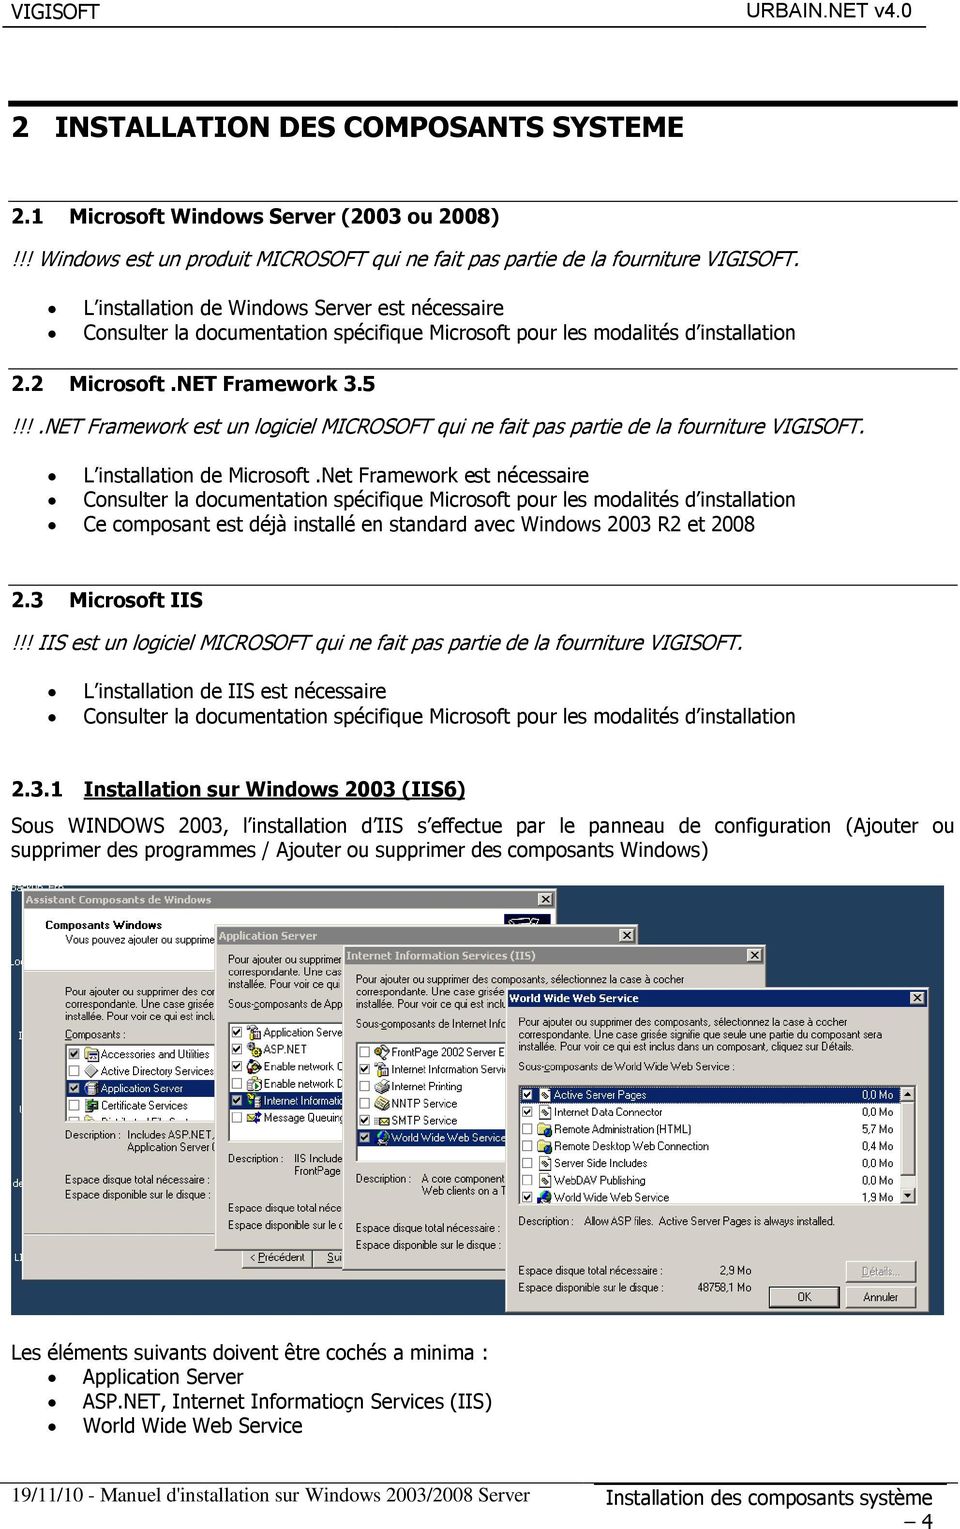 !!.NET Framework est un logiciel MICROSOFT qui ne fait pas partie de la fourniture VIGISOFT. L installation de Microsoft.